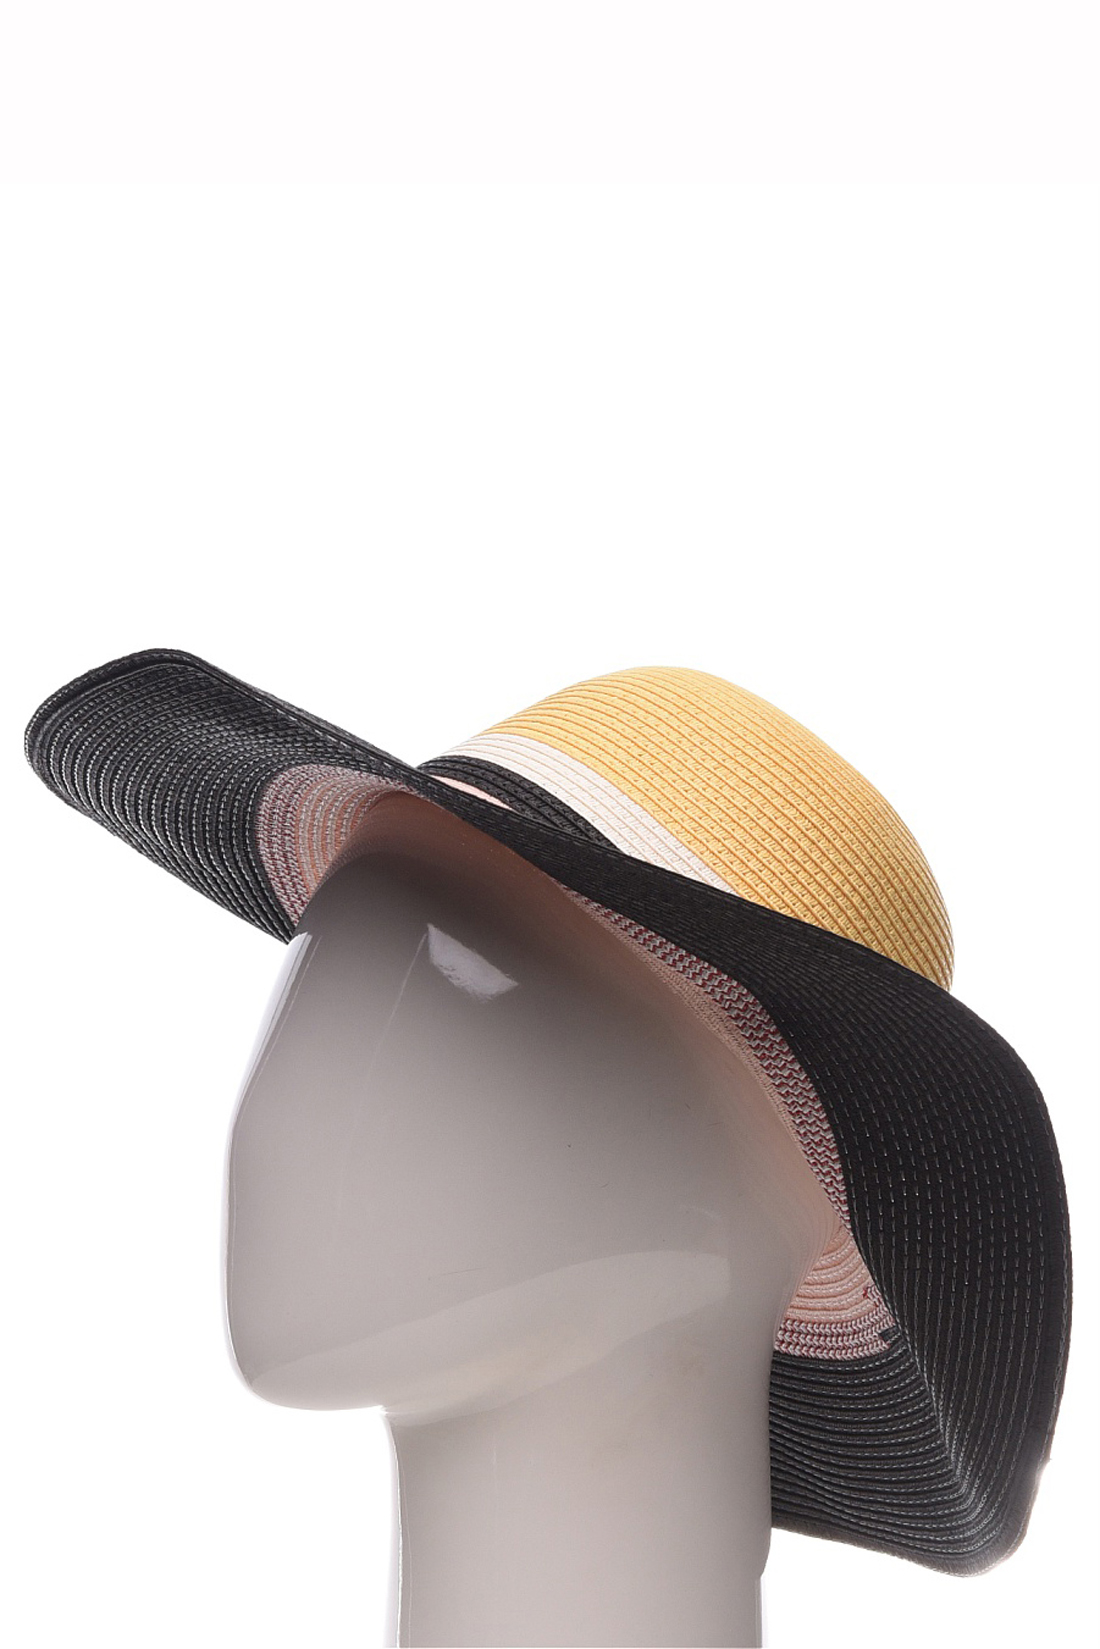 Шляпа с широкими полосами (арт. baon B349002), размер Б/р 56, цвет multicolor#многоцветный Шляпа с широкими полосами (арт. baon B349002) - фото 1